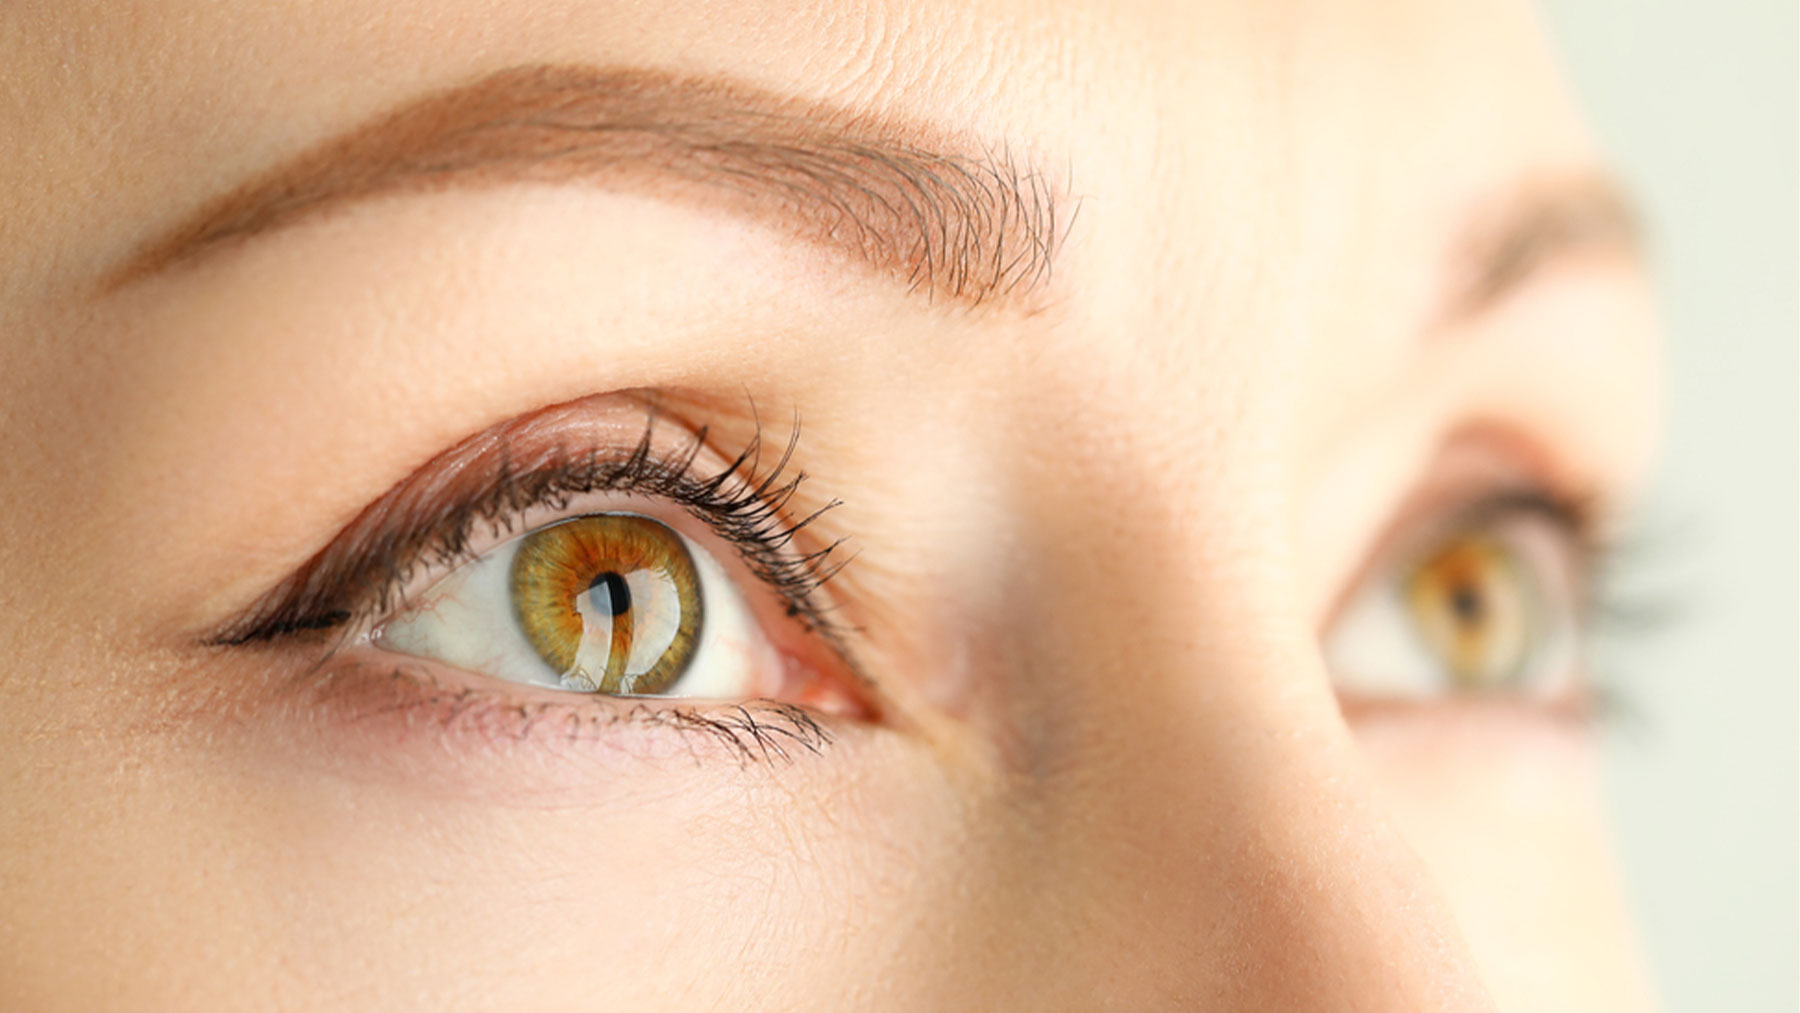 Hay que hacer un examen completo de ojos a los 40 años, según la Academia Americana de Oftalmología.